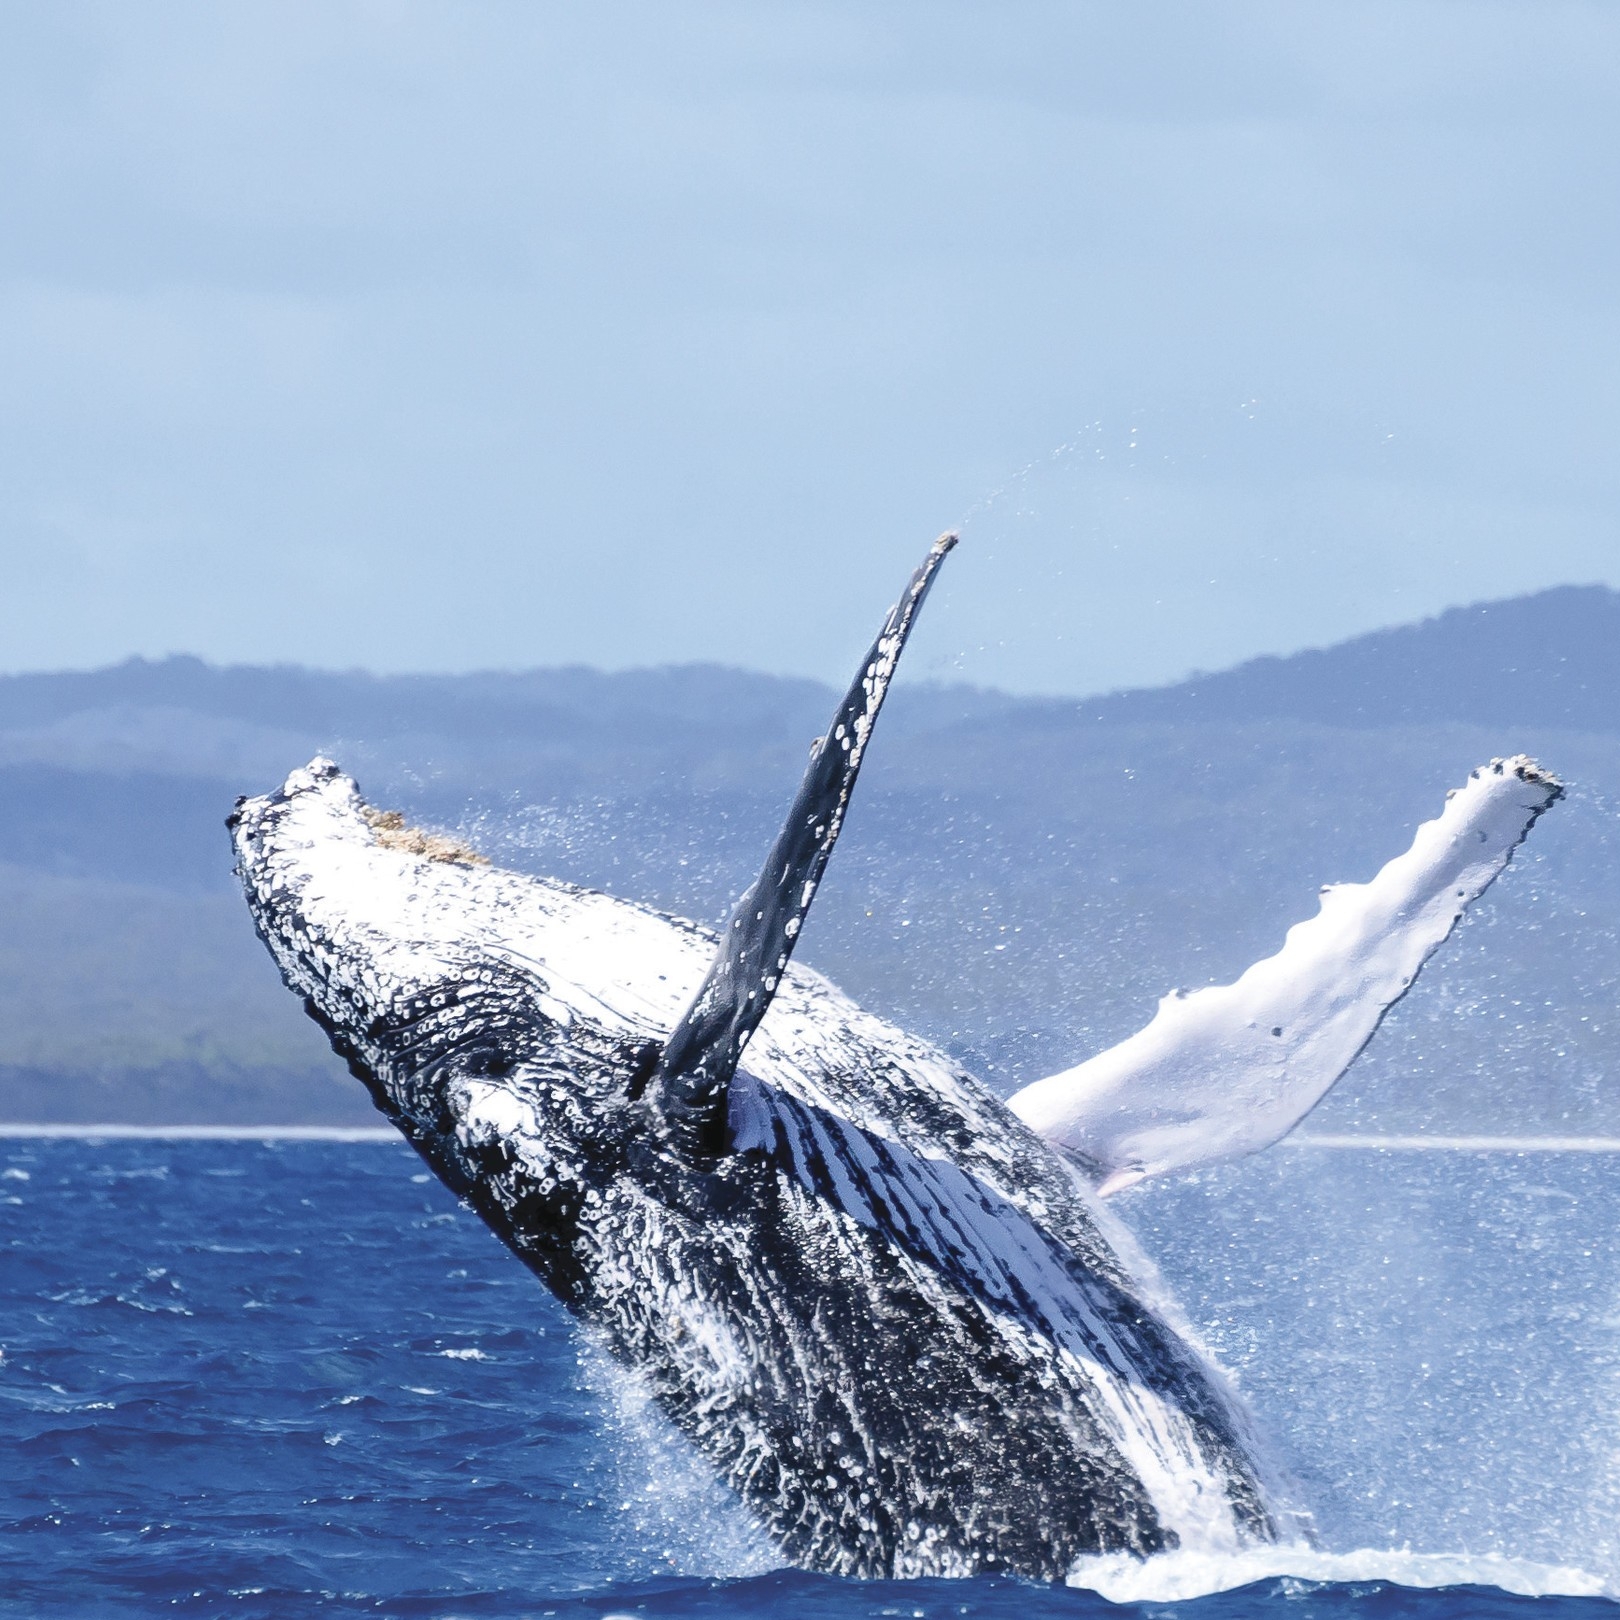 荷维湾海岸附近跃身击浪的座头鲸 © 昆士兰州旅游及活动推广局/Jewels Lynch 版权所有